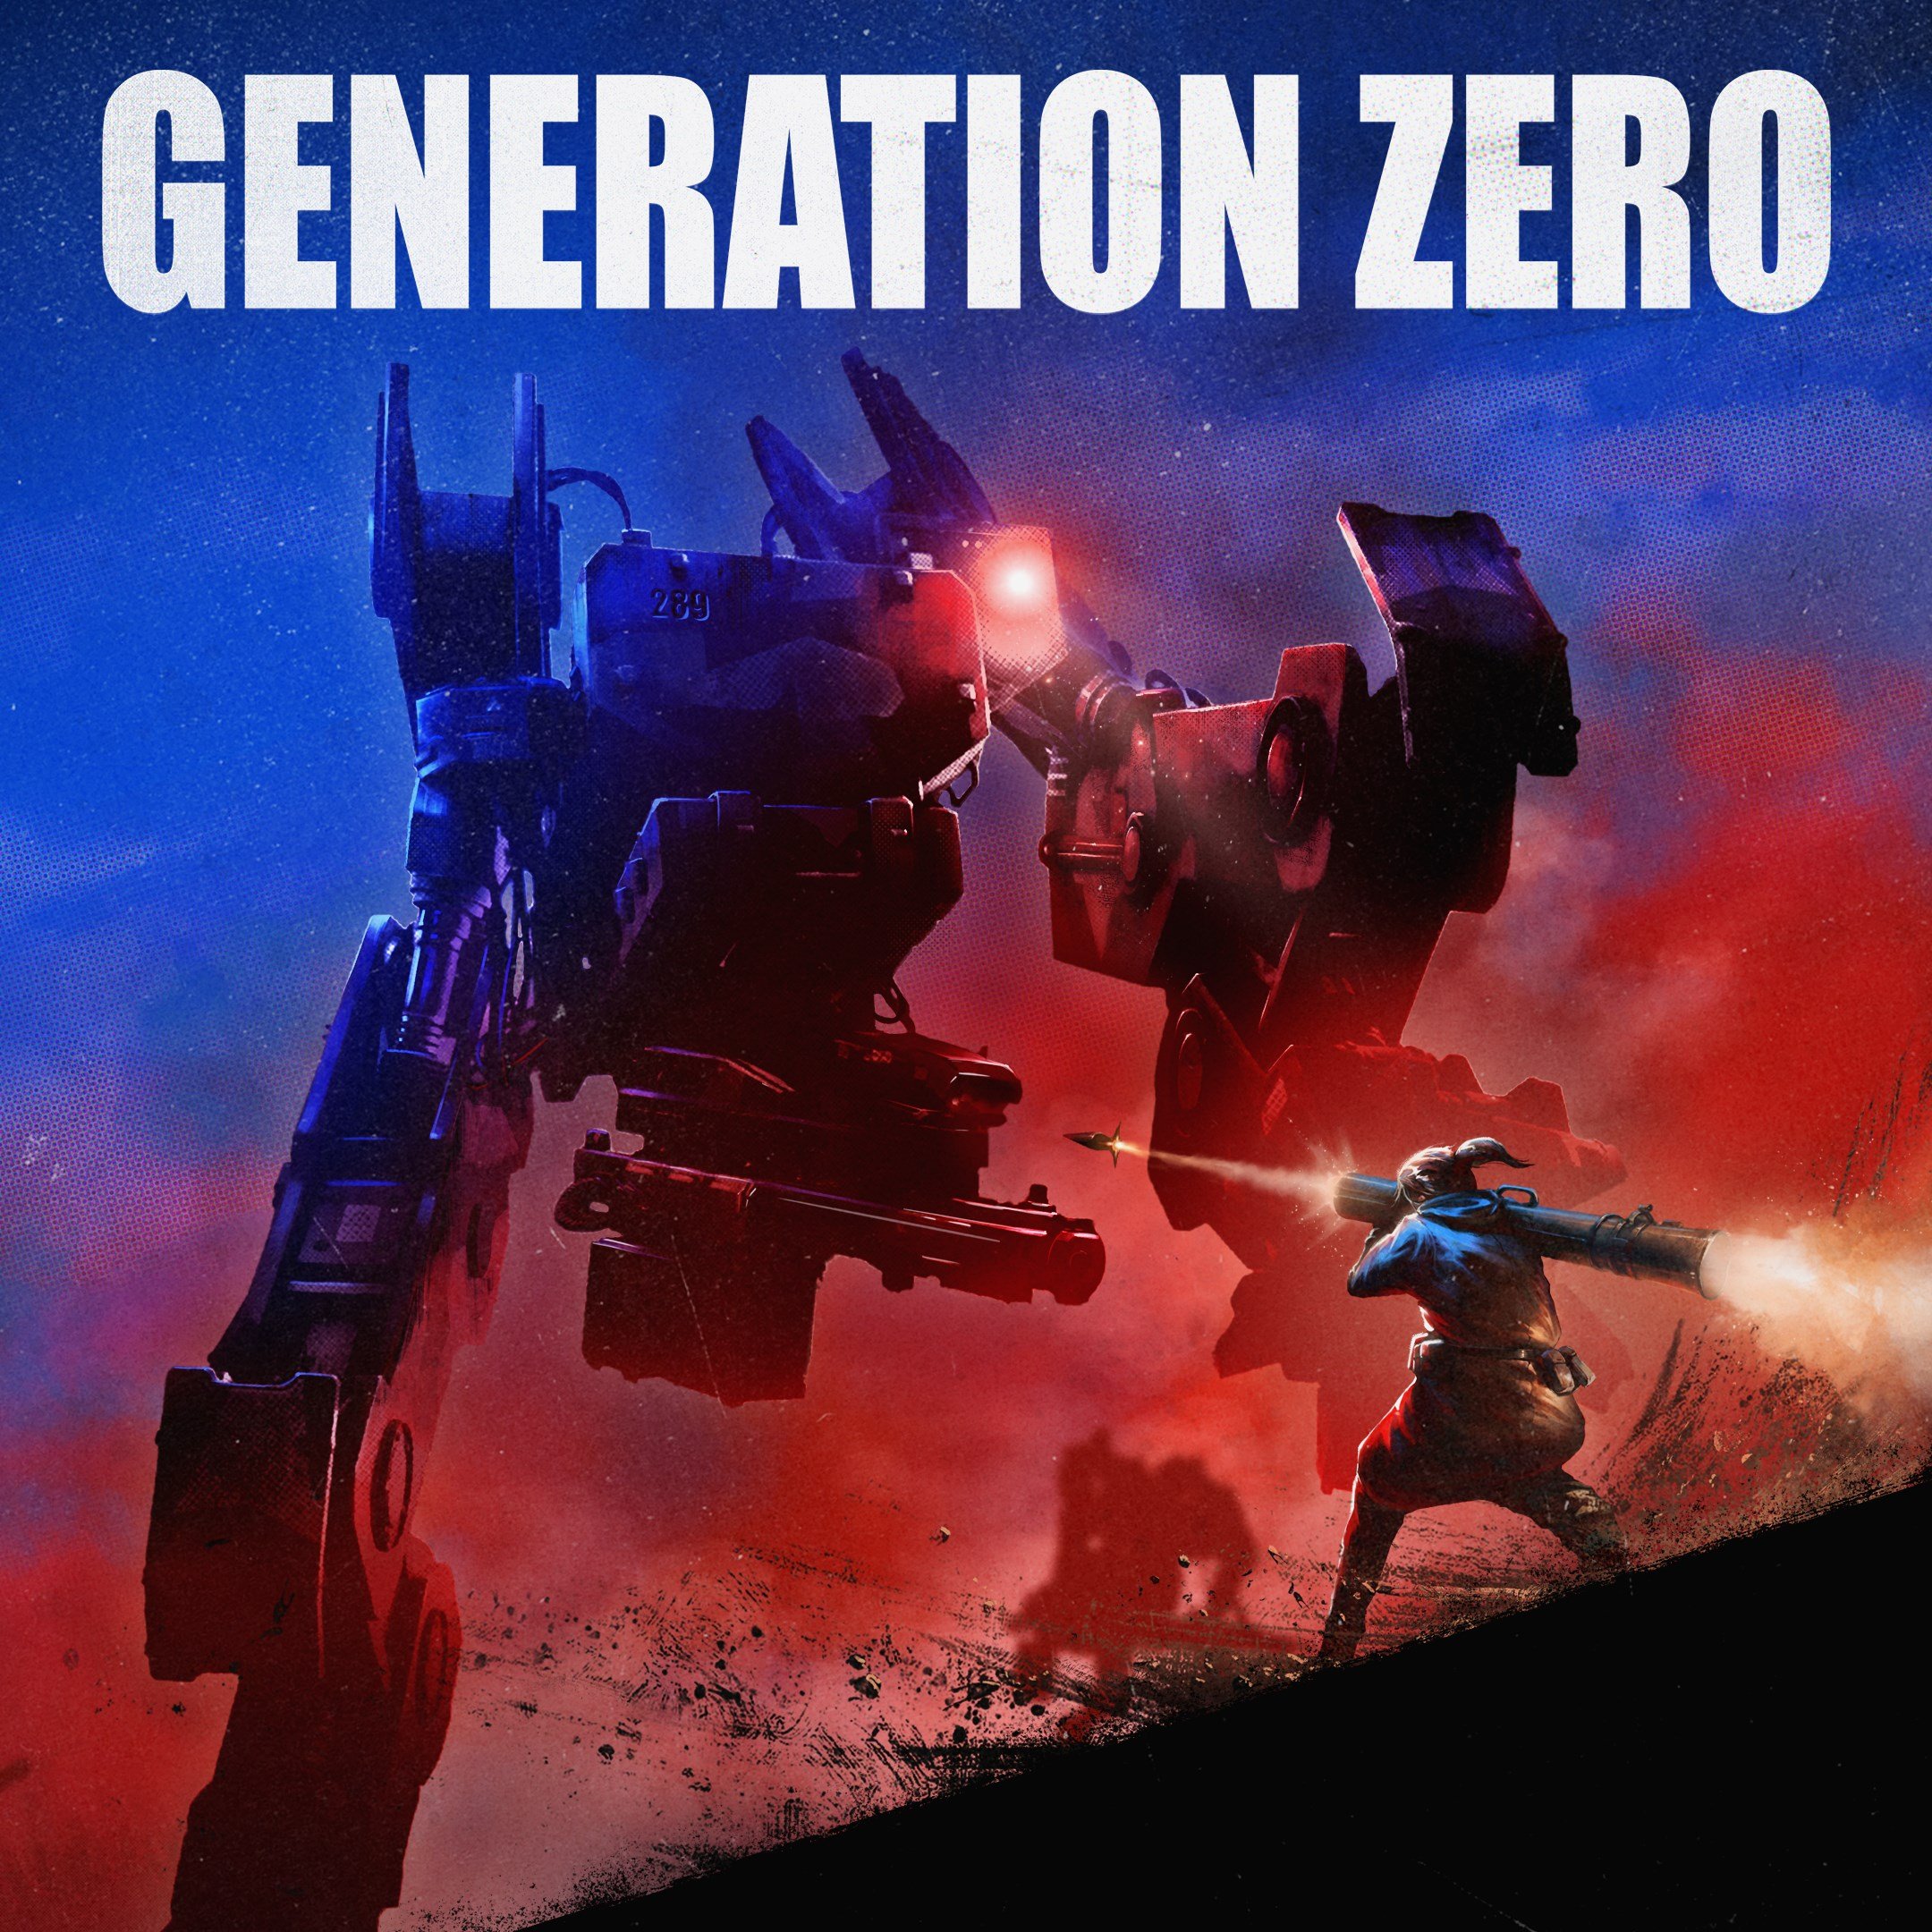 Boxart for Generation Zero®